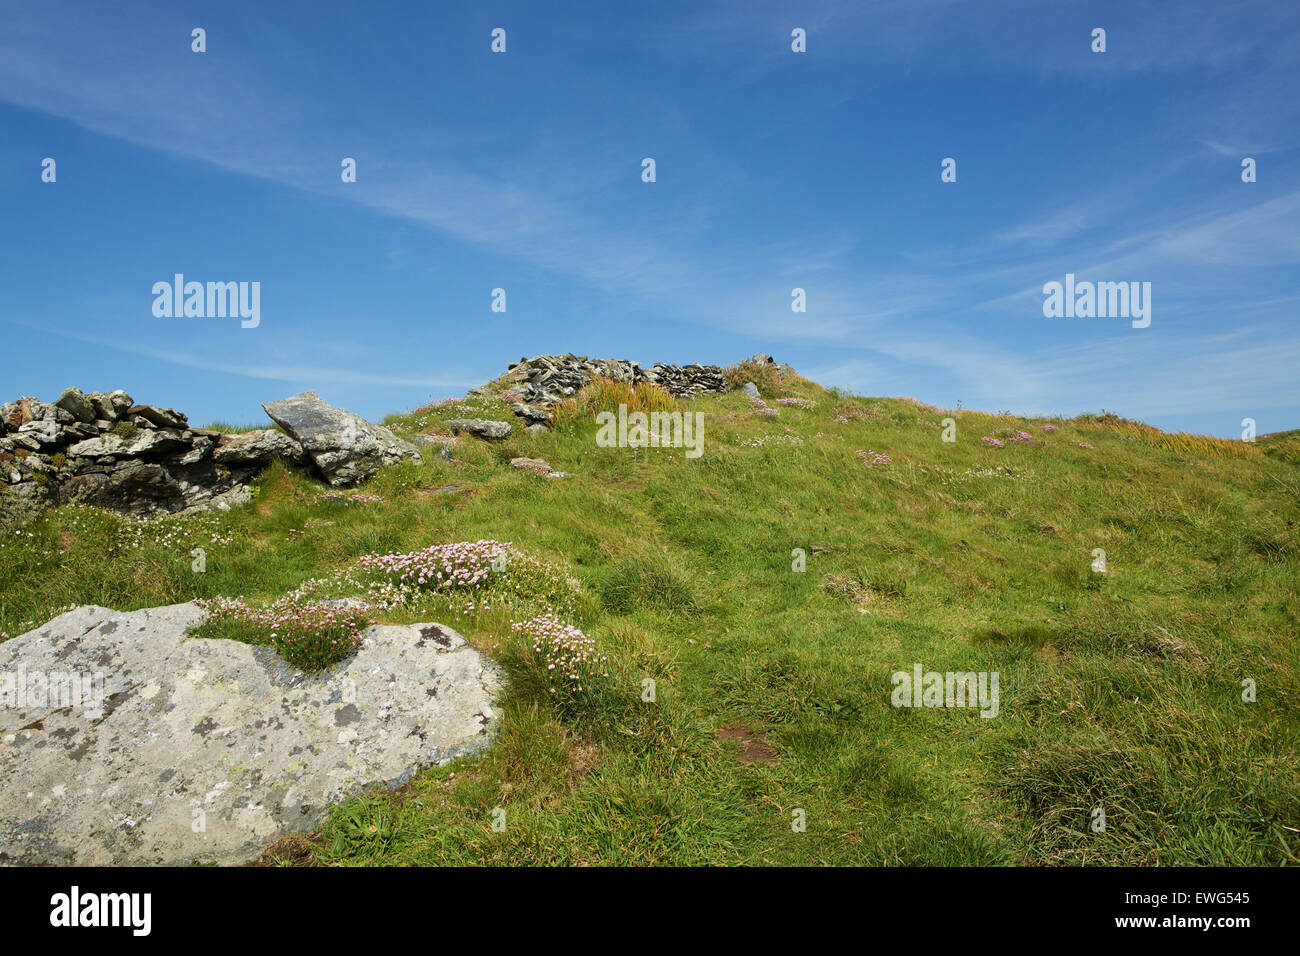 Cornish landes avec un mur en pierre sèche à l'abandon. Pelouse et fleurs parmi les rochers de granit. Banque D'Images